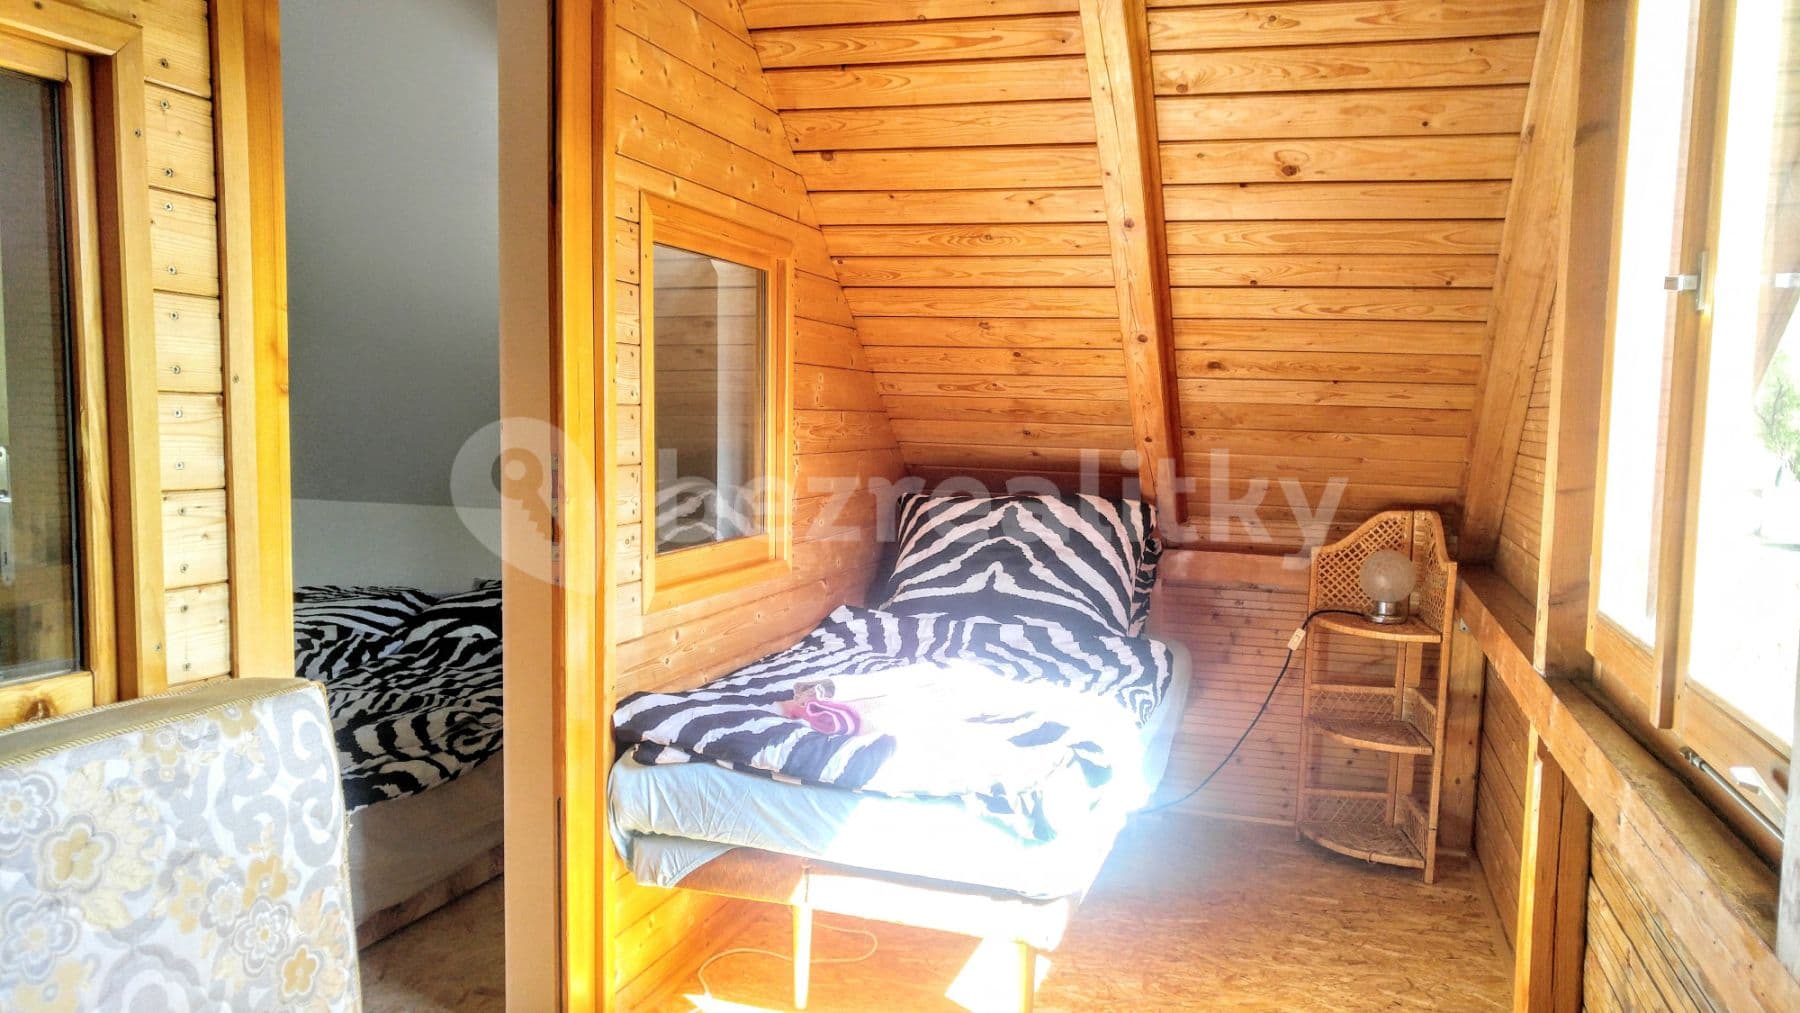 2 bedroom with open-plan kitchen flat to rent, 53 m², Šlovice, Hřebečníky, Středočeský Region